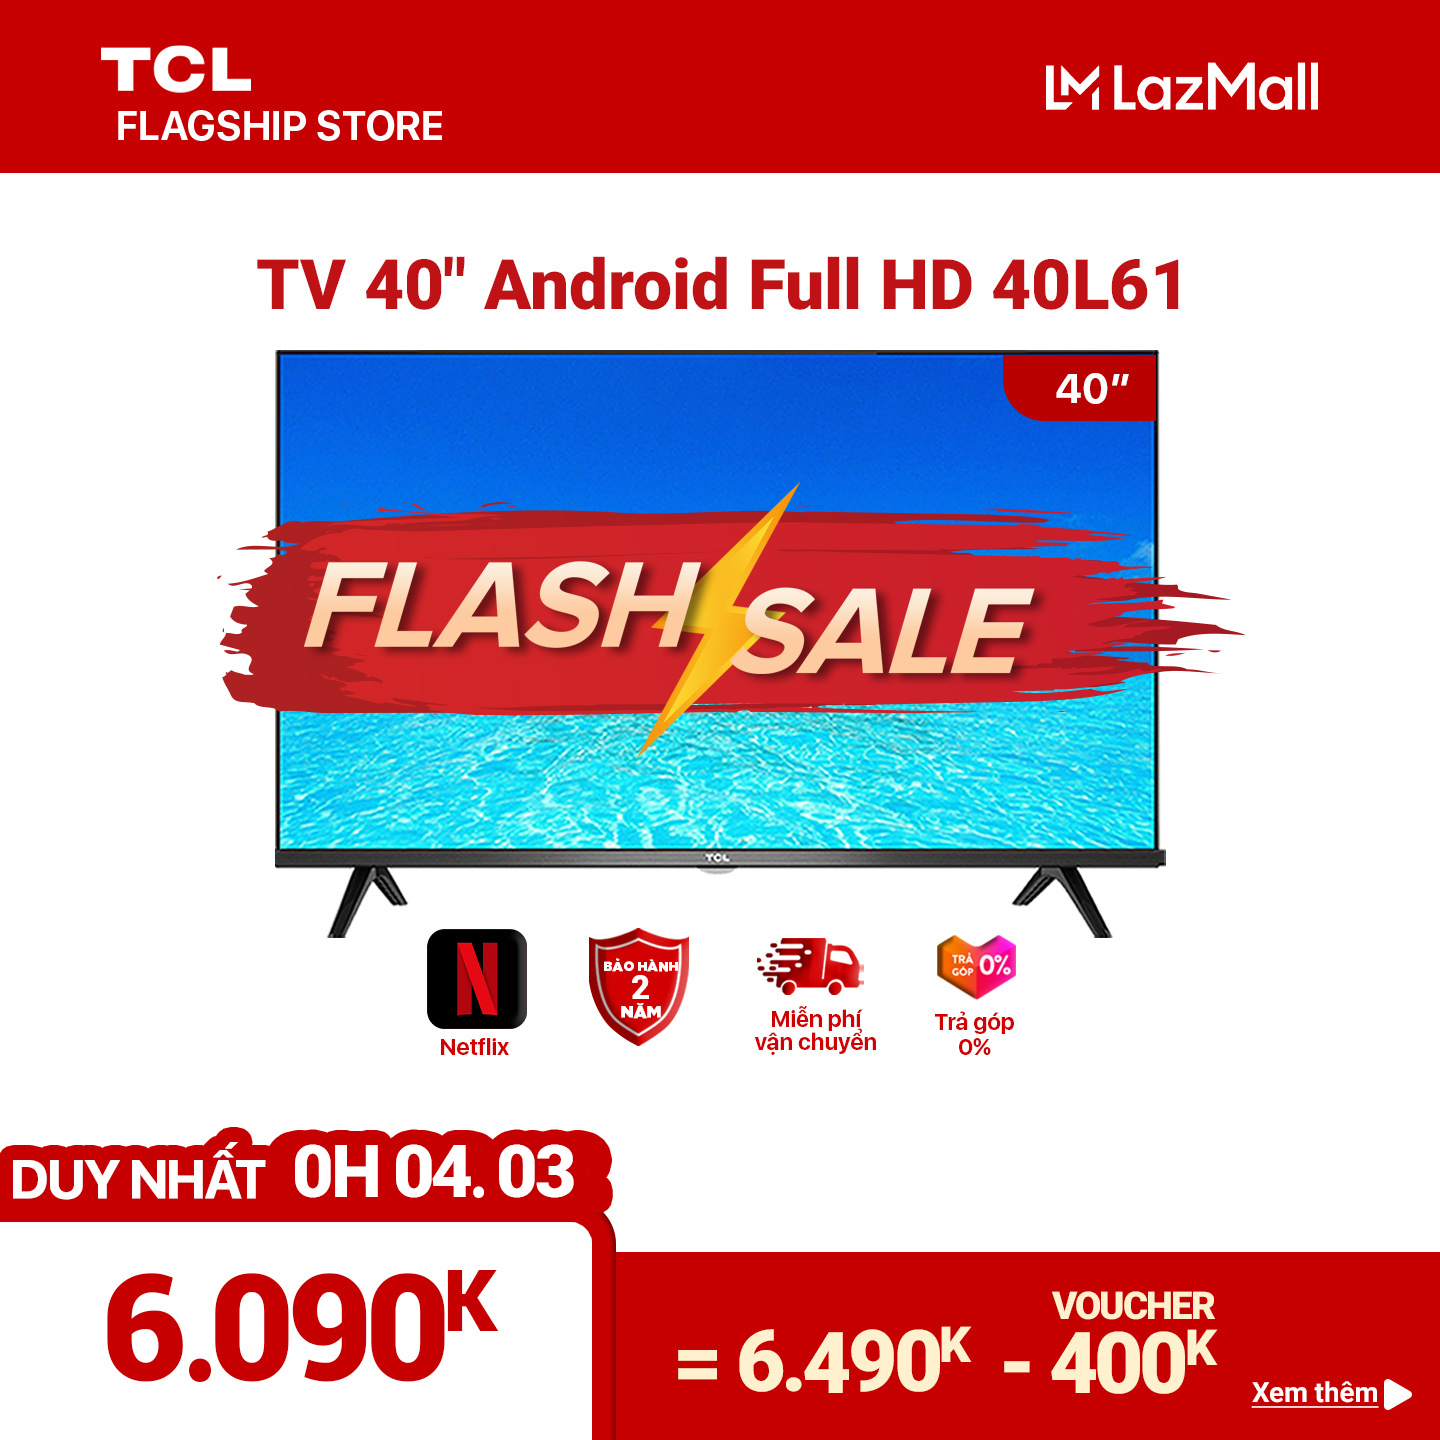 [Trả góp 0%]Smart TV TCL Android 8.0 40 inch Full HD .wifi – 40L61 – HDR Dolby Chromecast T-cast AI+IN. Màn hình tràn viền – Tivi giá rẻ chất lượng – Bảo hành 2 năm